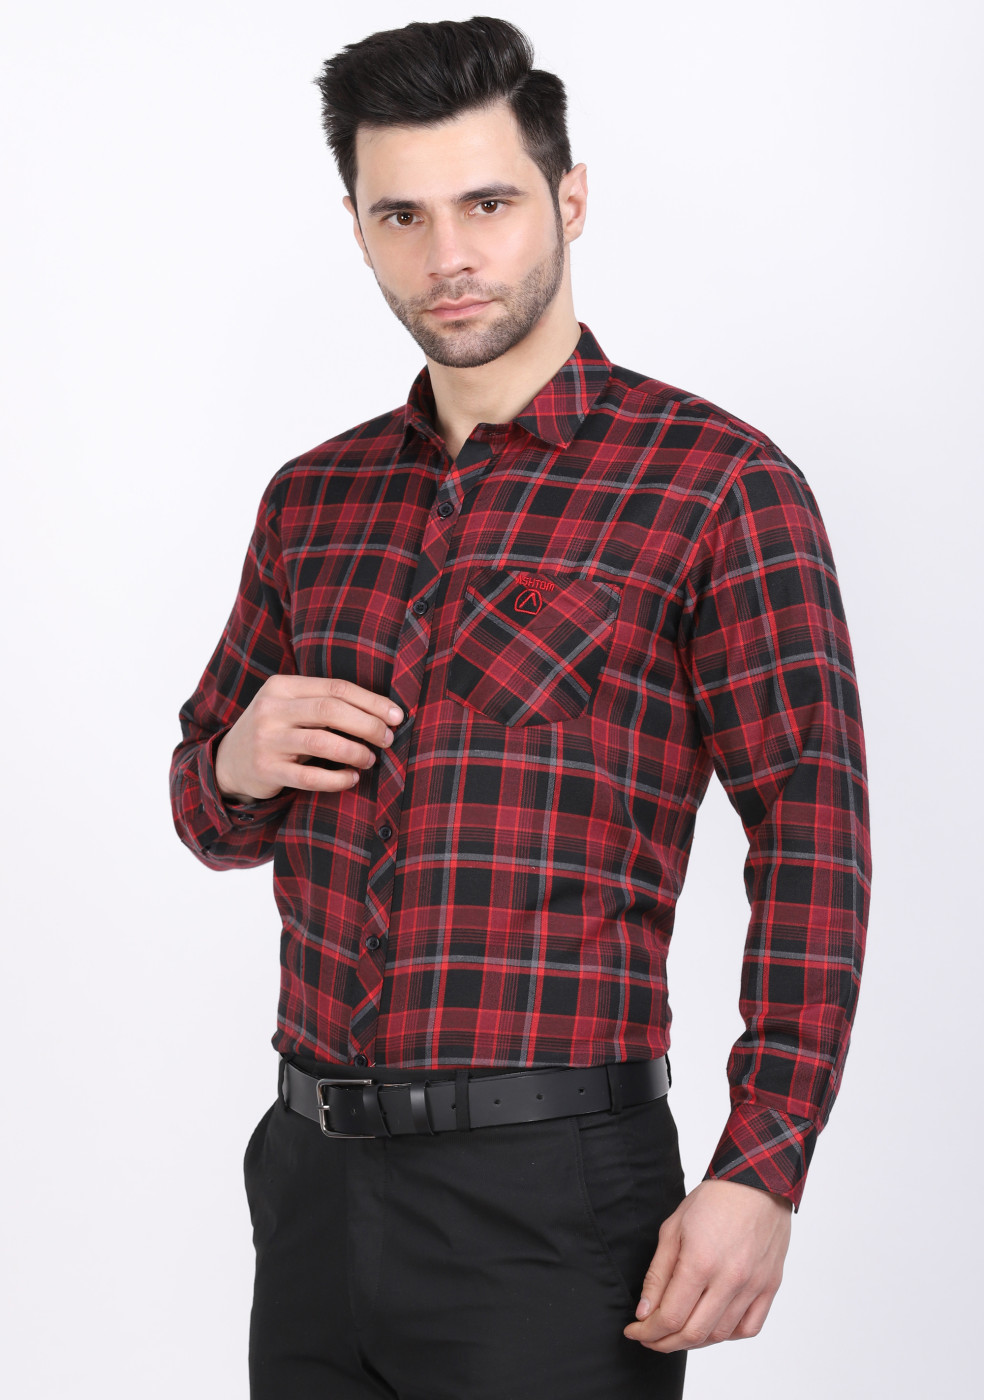 ASHTOM PC Red Check Shirt For Men